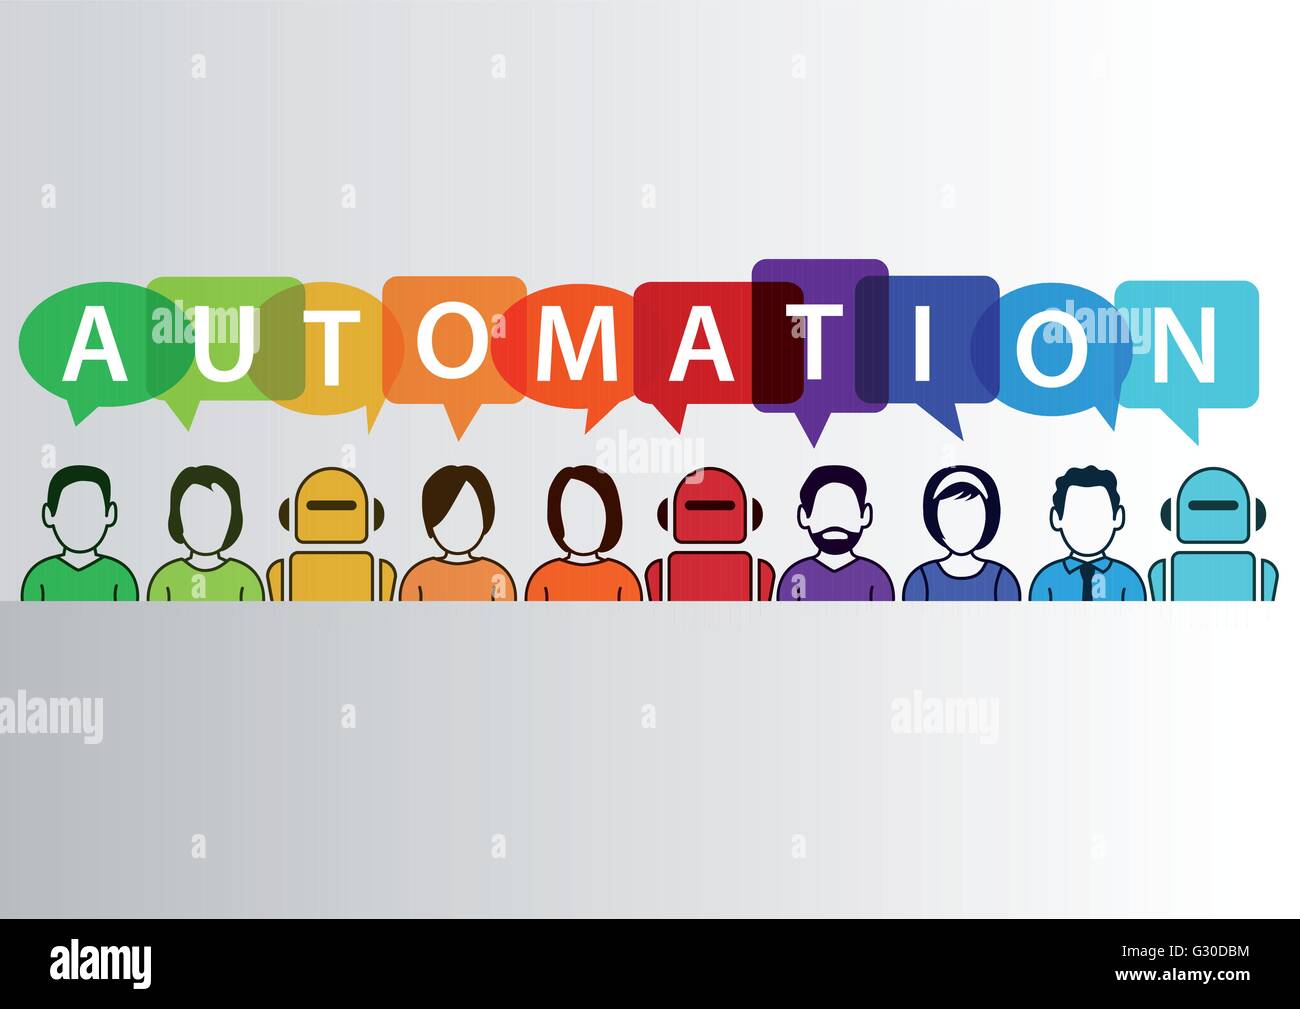 Prozess-Automatisierung-Konzept als Hintergrund. Vektor-Illustration der gemischte Gruppe von Menschen, Maschinen und Roboter Stock Vektor